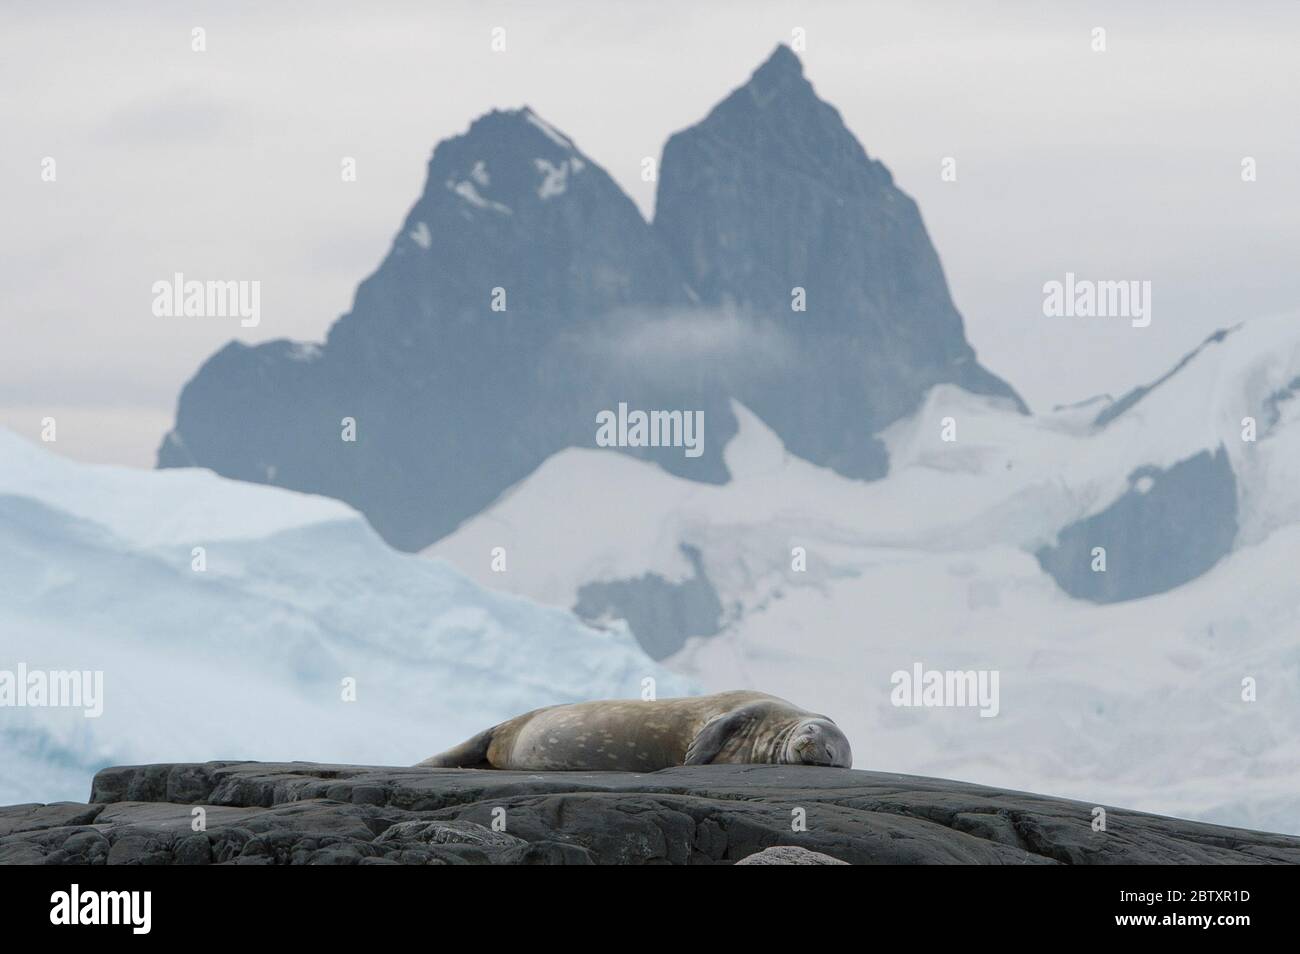 Crafleater Seal sur les rochers, Danco Island Antarctique Banque D'Images